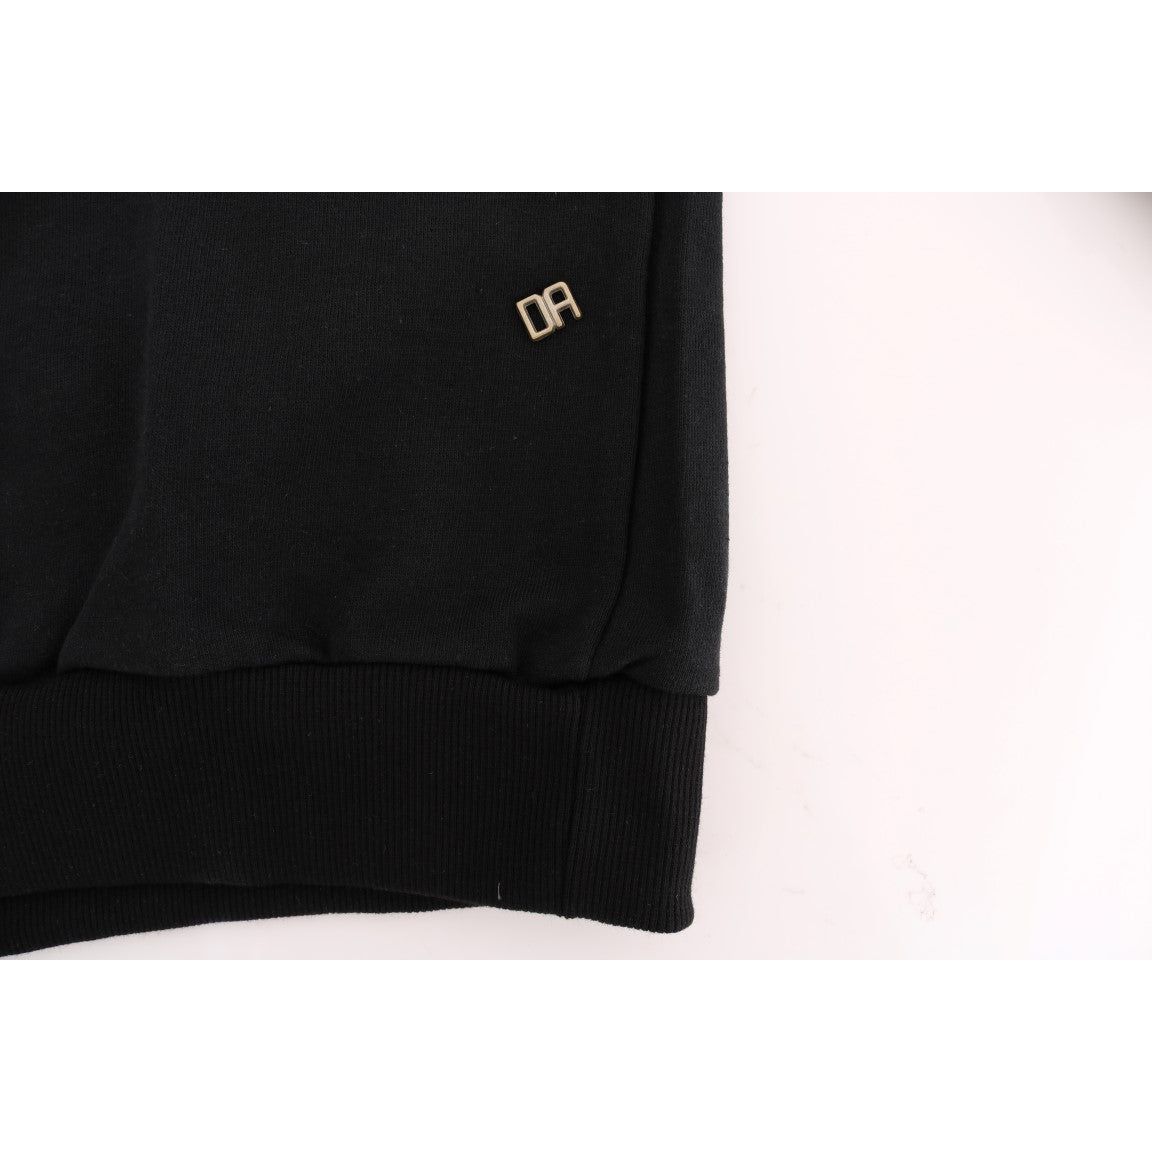 Daniele Alessandrini Elegant Black Cotton Hooded Sweater black-gym-casual-hooded-cotton-sweater 457508-black-gym-casual-hooded-cotton-sweater-5.jpg